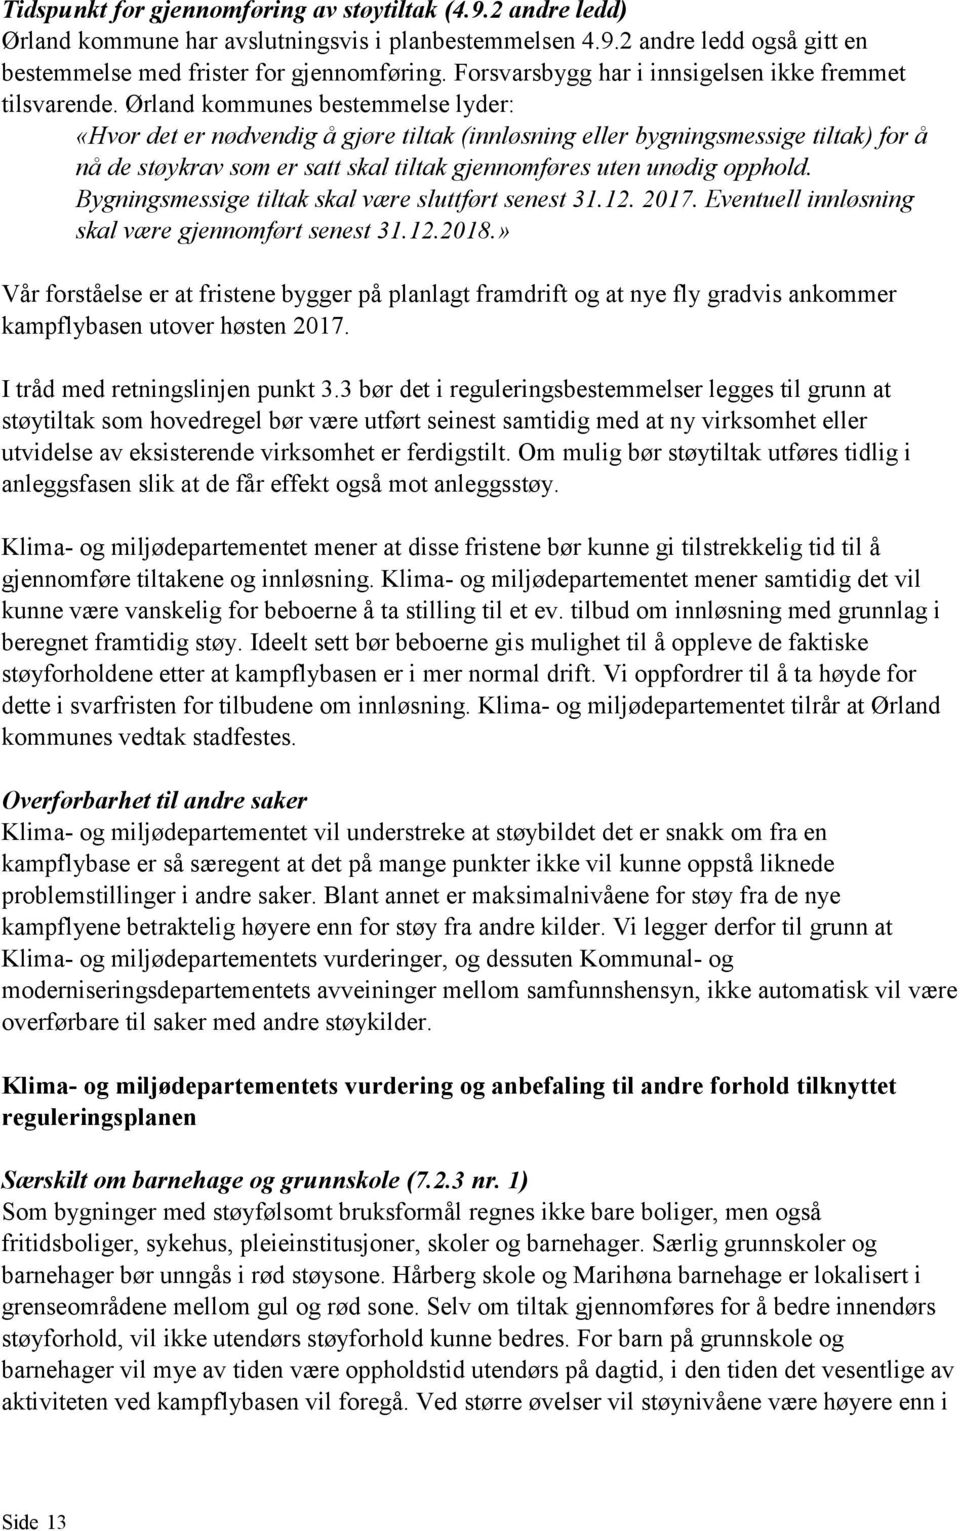 Ørland kommunes bestemmelse lyder: «Hvor det er nødvendig å gjøre tiltak (innløsning eller bygningsmessige tiltak) for å nå de støykrav som er satt skal tiltak gjennomføres uten unødig opphold.